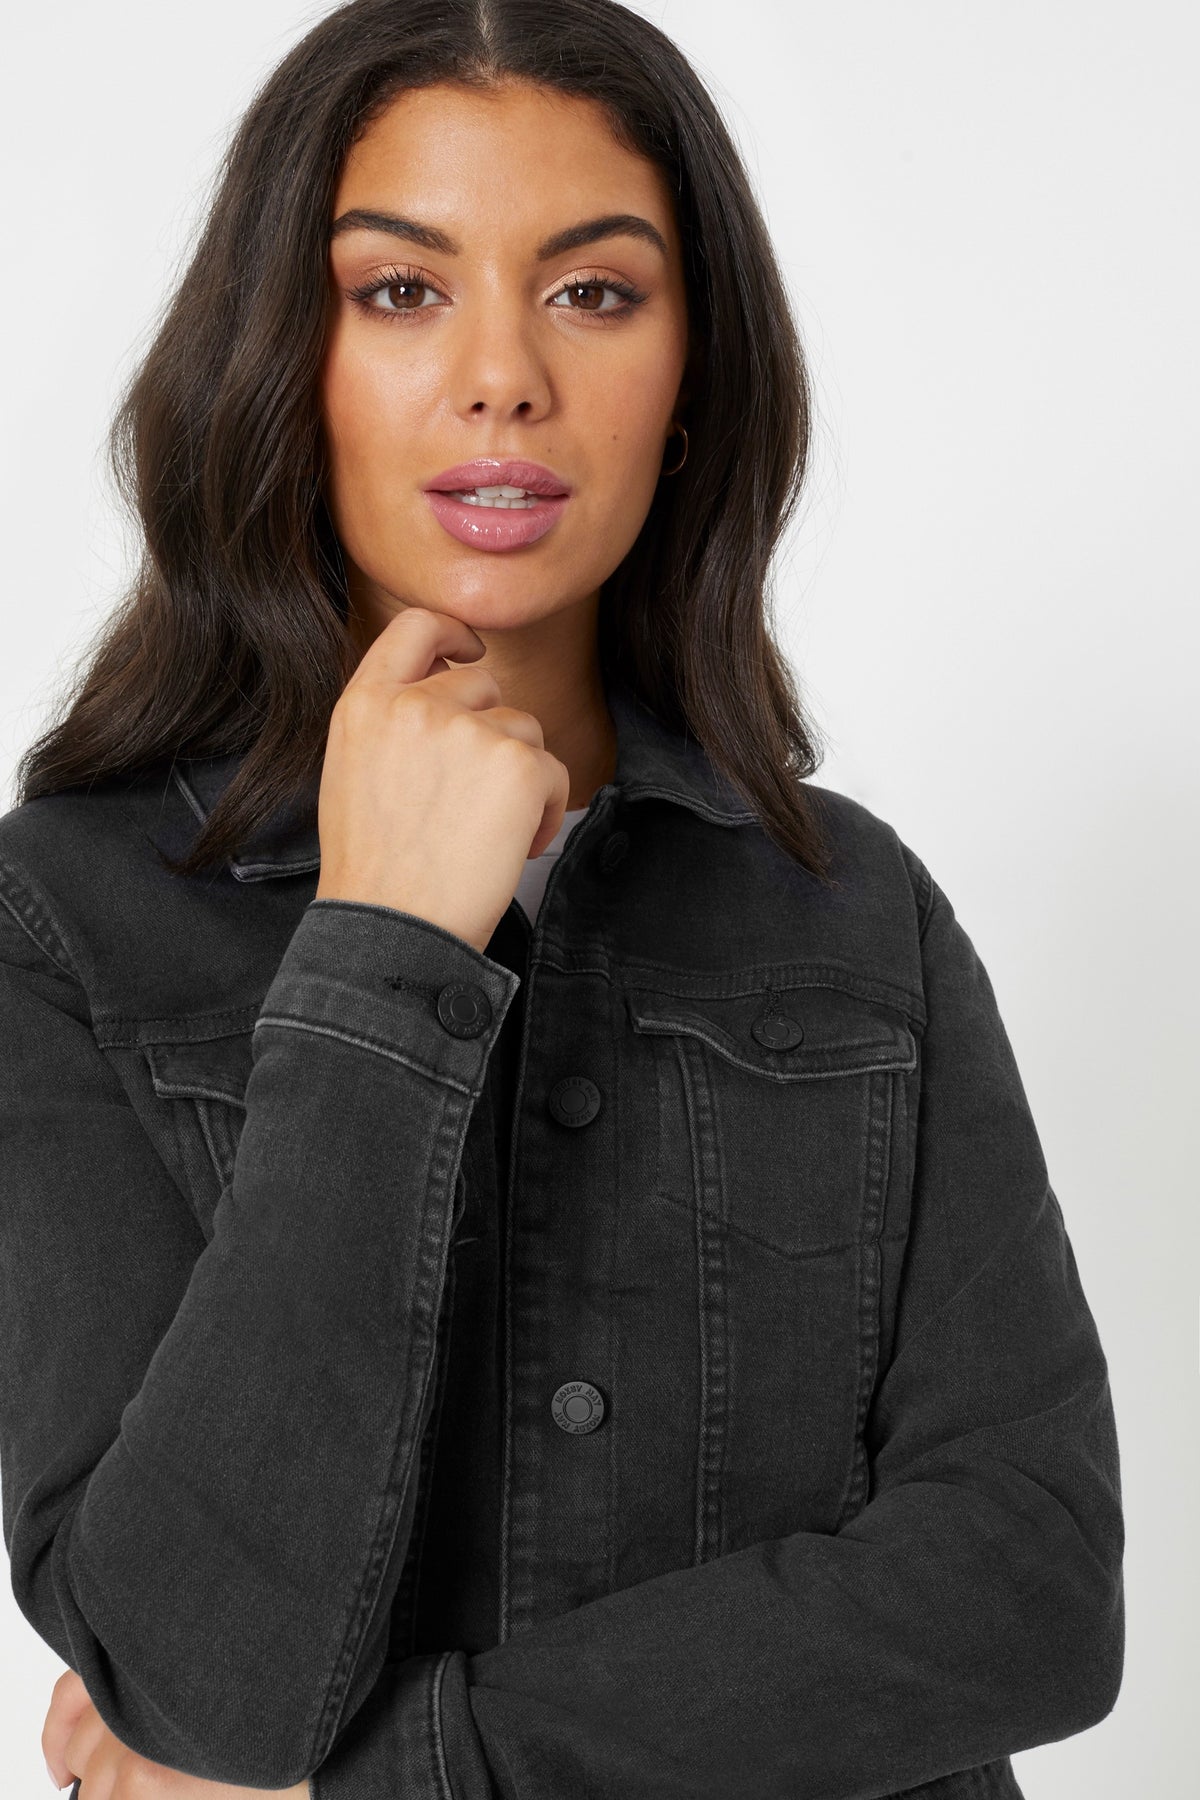 Stylish denim jacket for women, showcased on a thoughtful model.